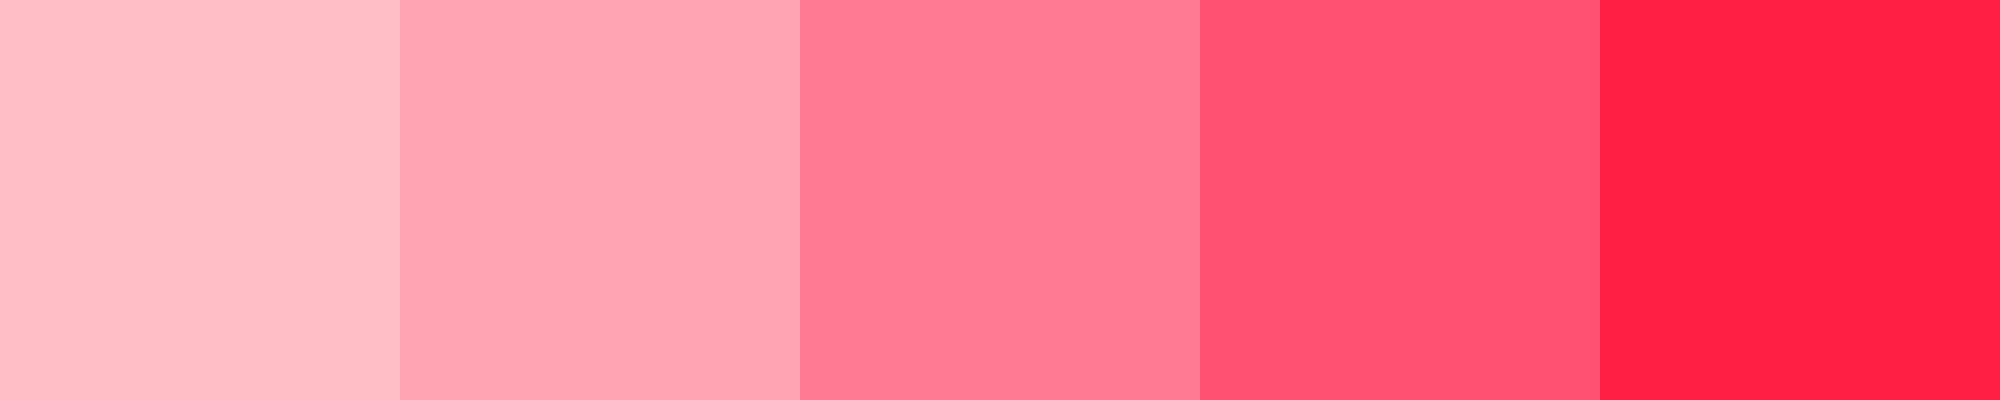 Оттенки розового цвета. Розовый тон. Розовая палитра. Розовый цвет цвет. Как пишется бледно розовый